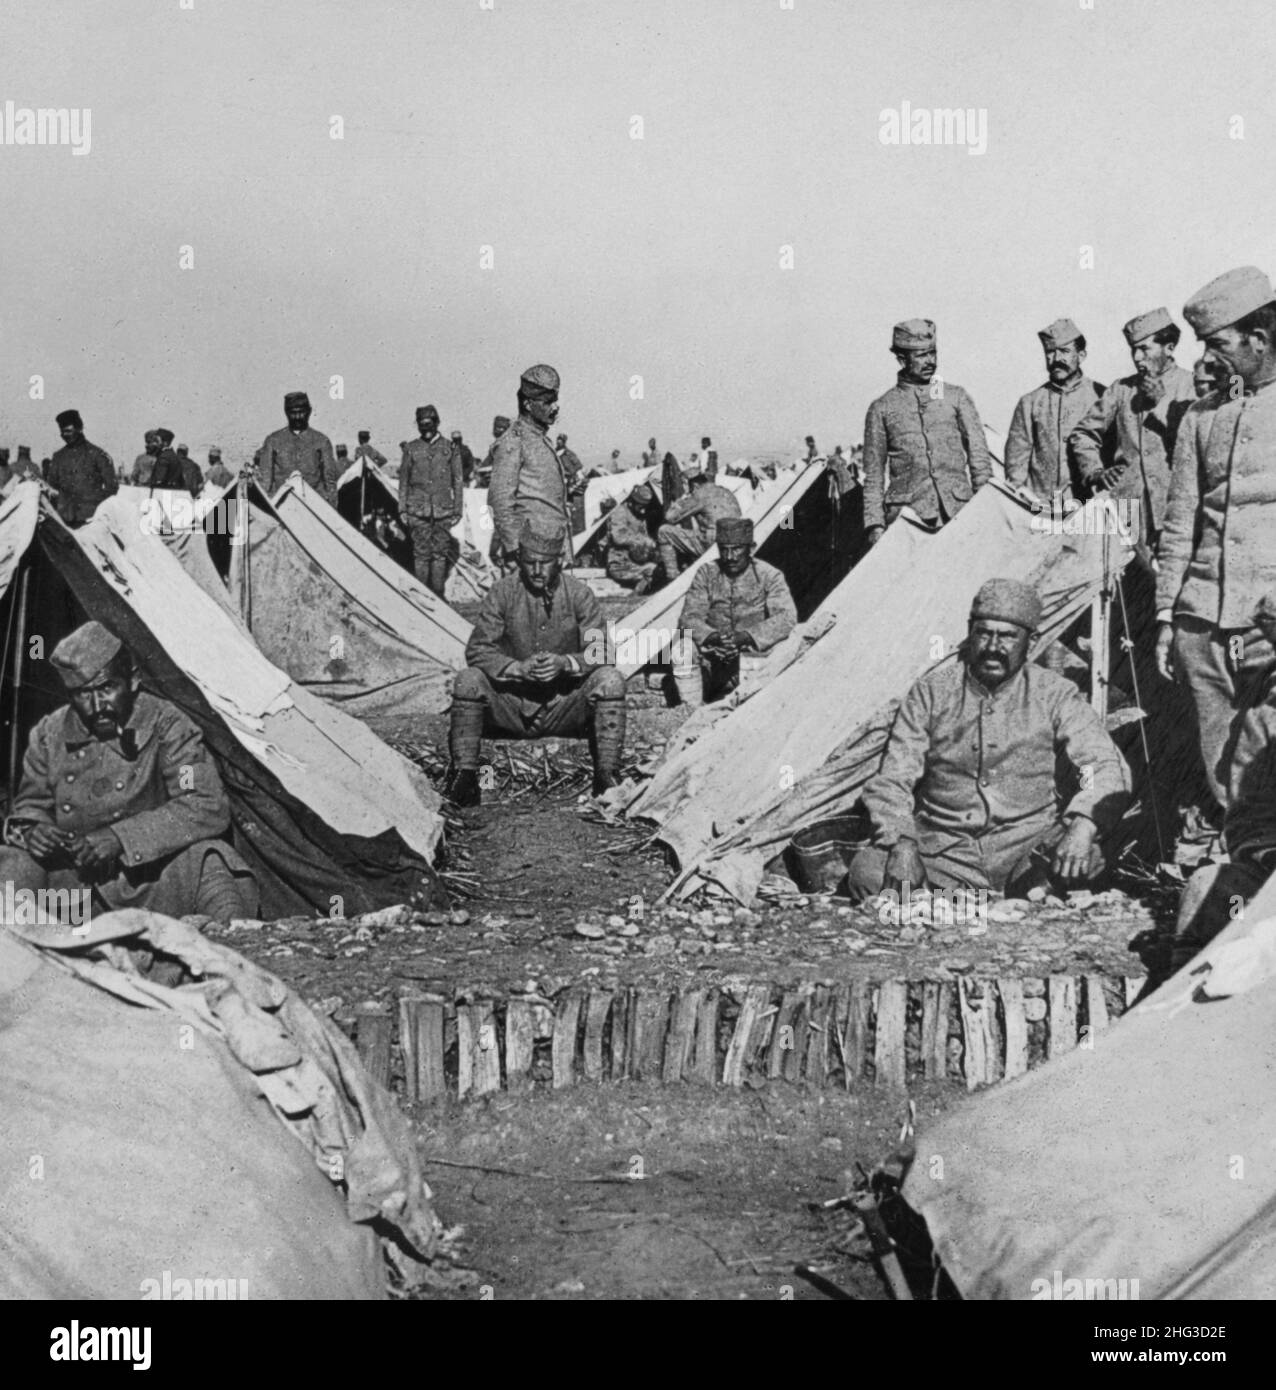 Photo d'époque de la première Guerre mondiale 1914-1918.Un camp de repos serbe arrière de tranchées de première ligne dans les Balkans Banque D'Images